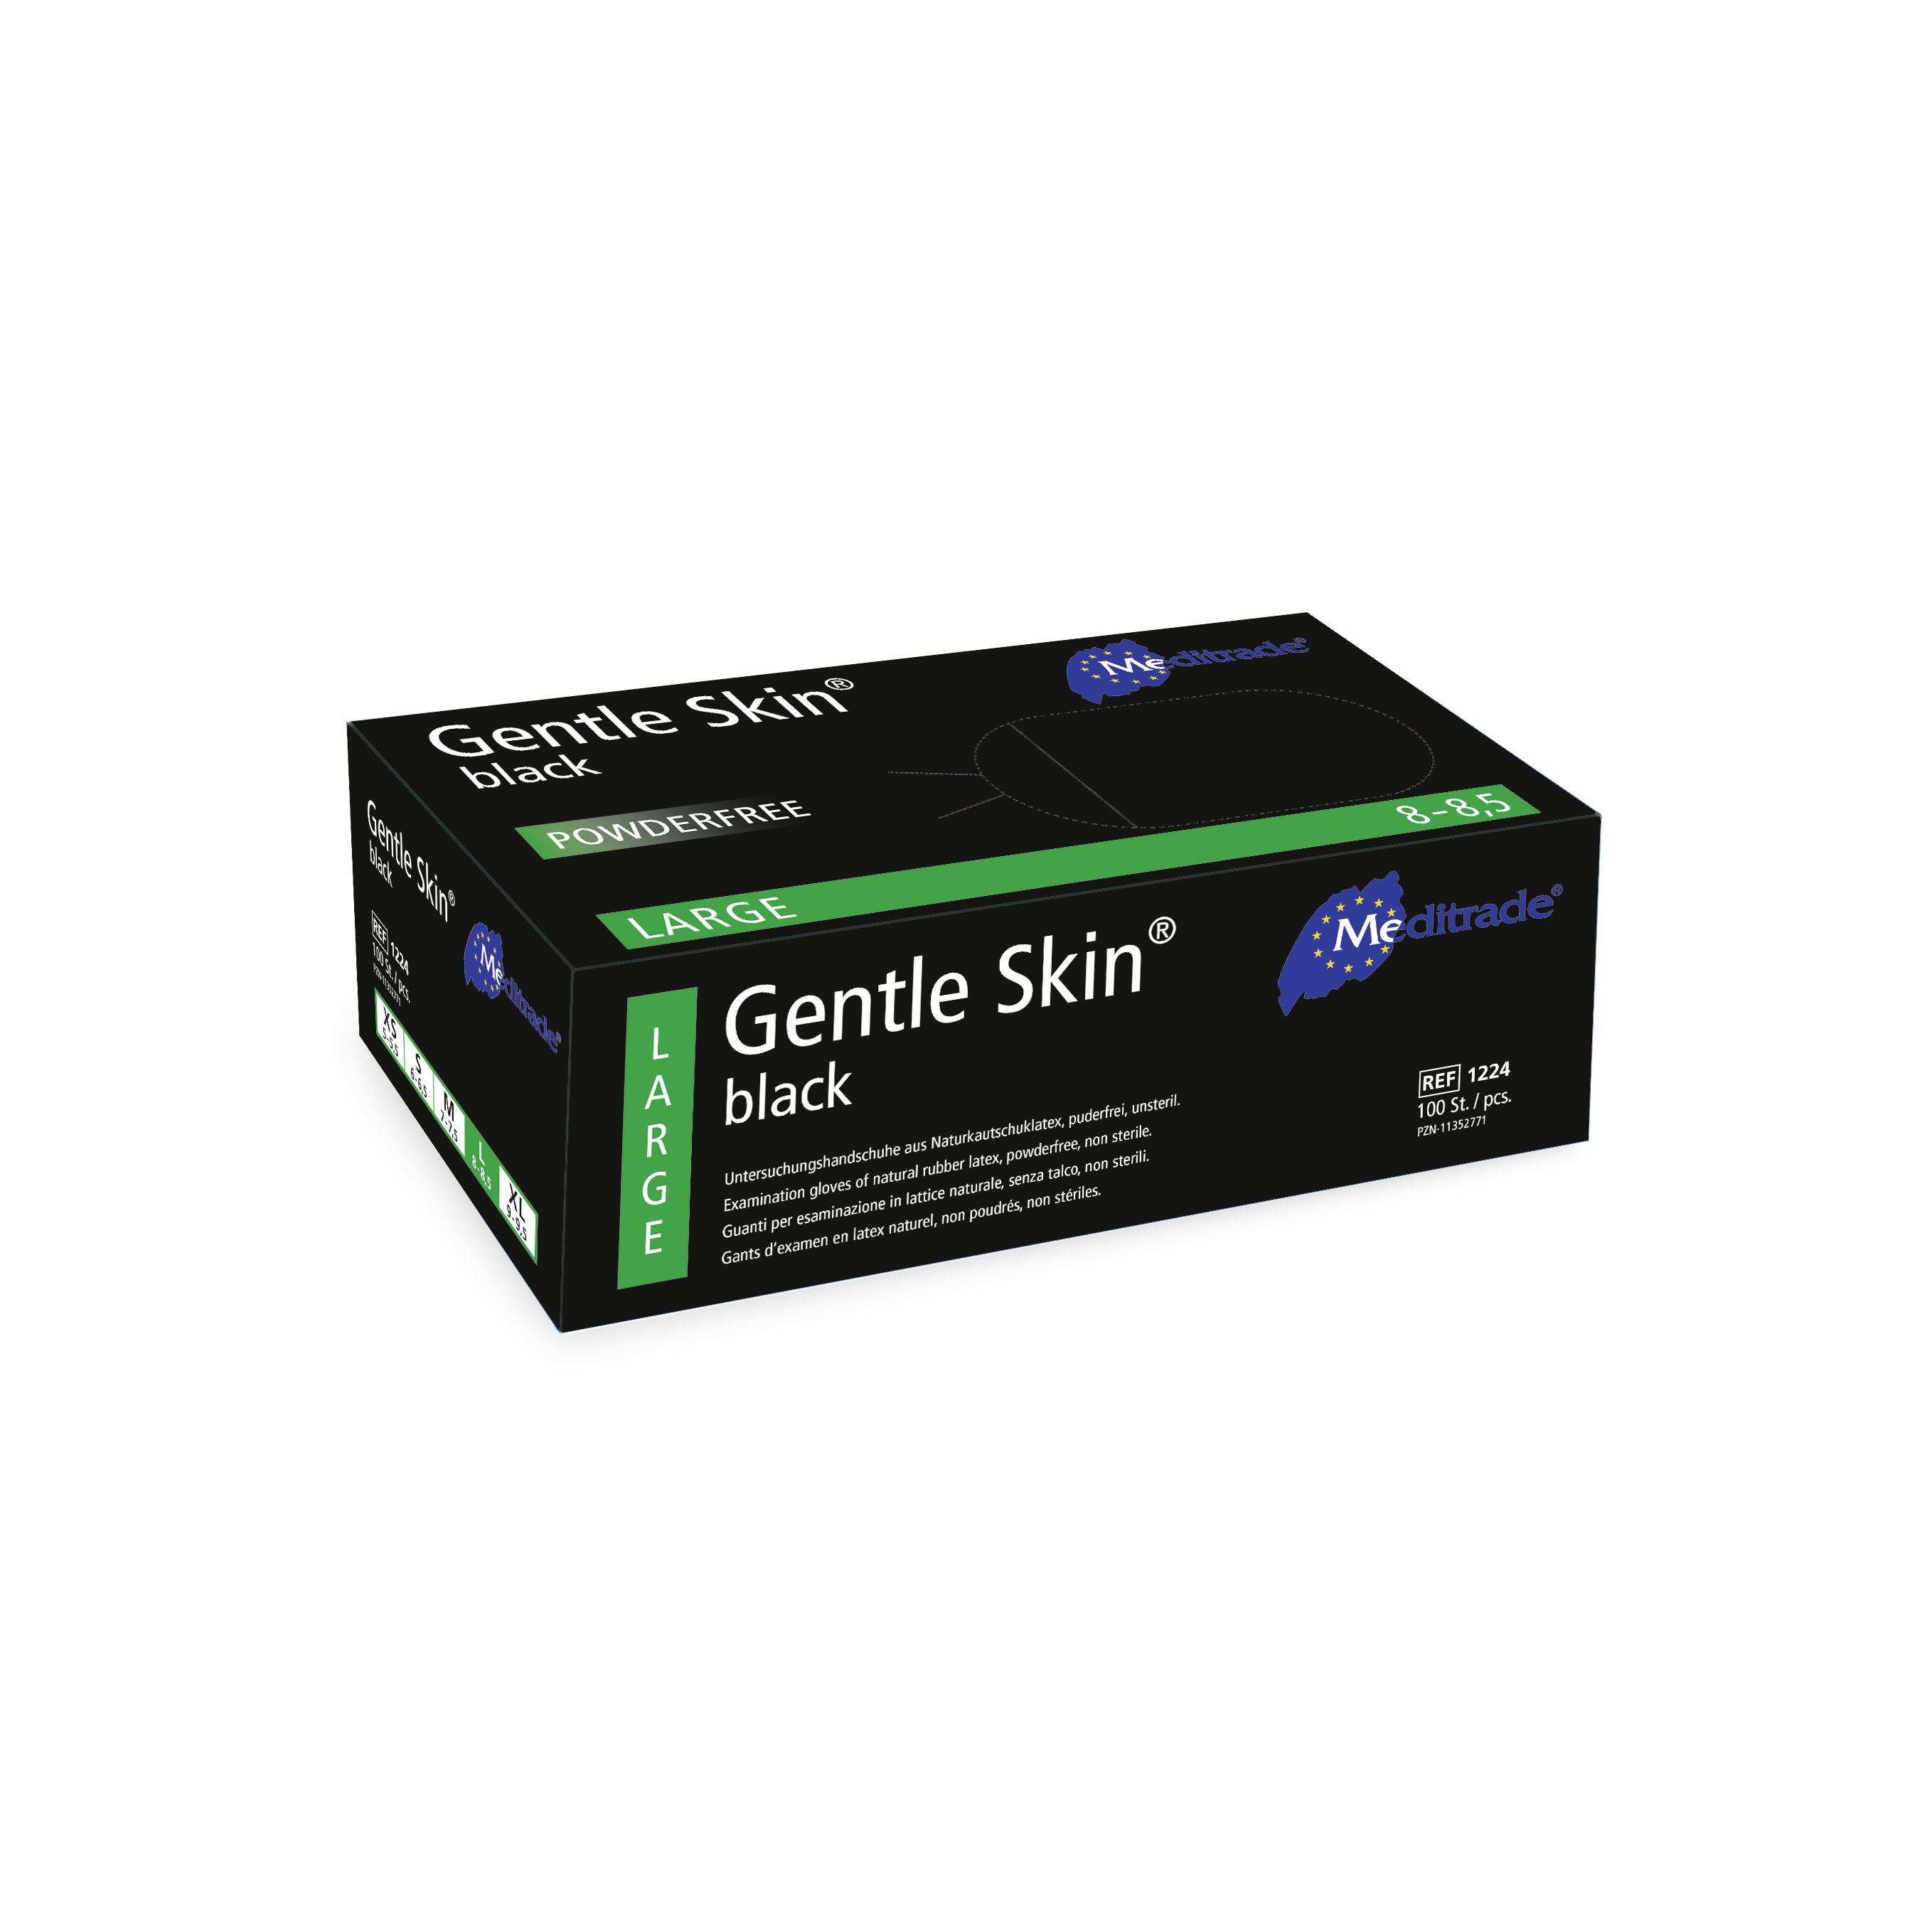 Gentle Skin® black Untersuchungshandschuhe - Packung à 100 Stück